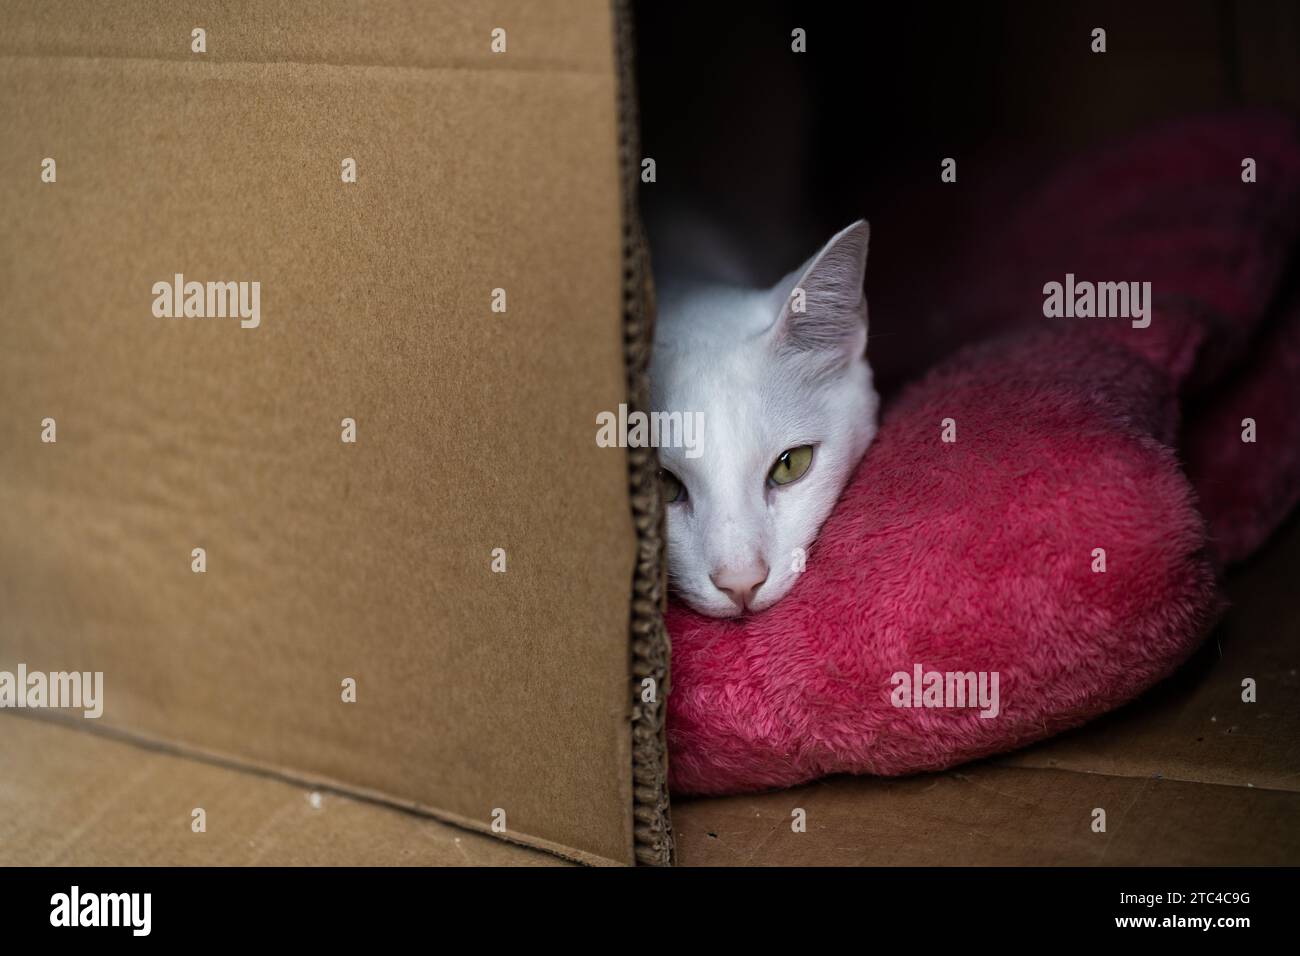 Kitty blanc endormi dans une boîte, arborant un visage endormi adorable. 😺 Banque D'Images